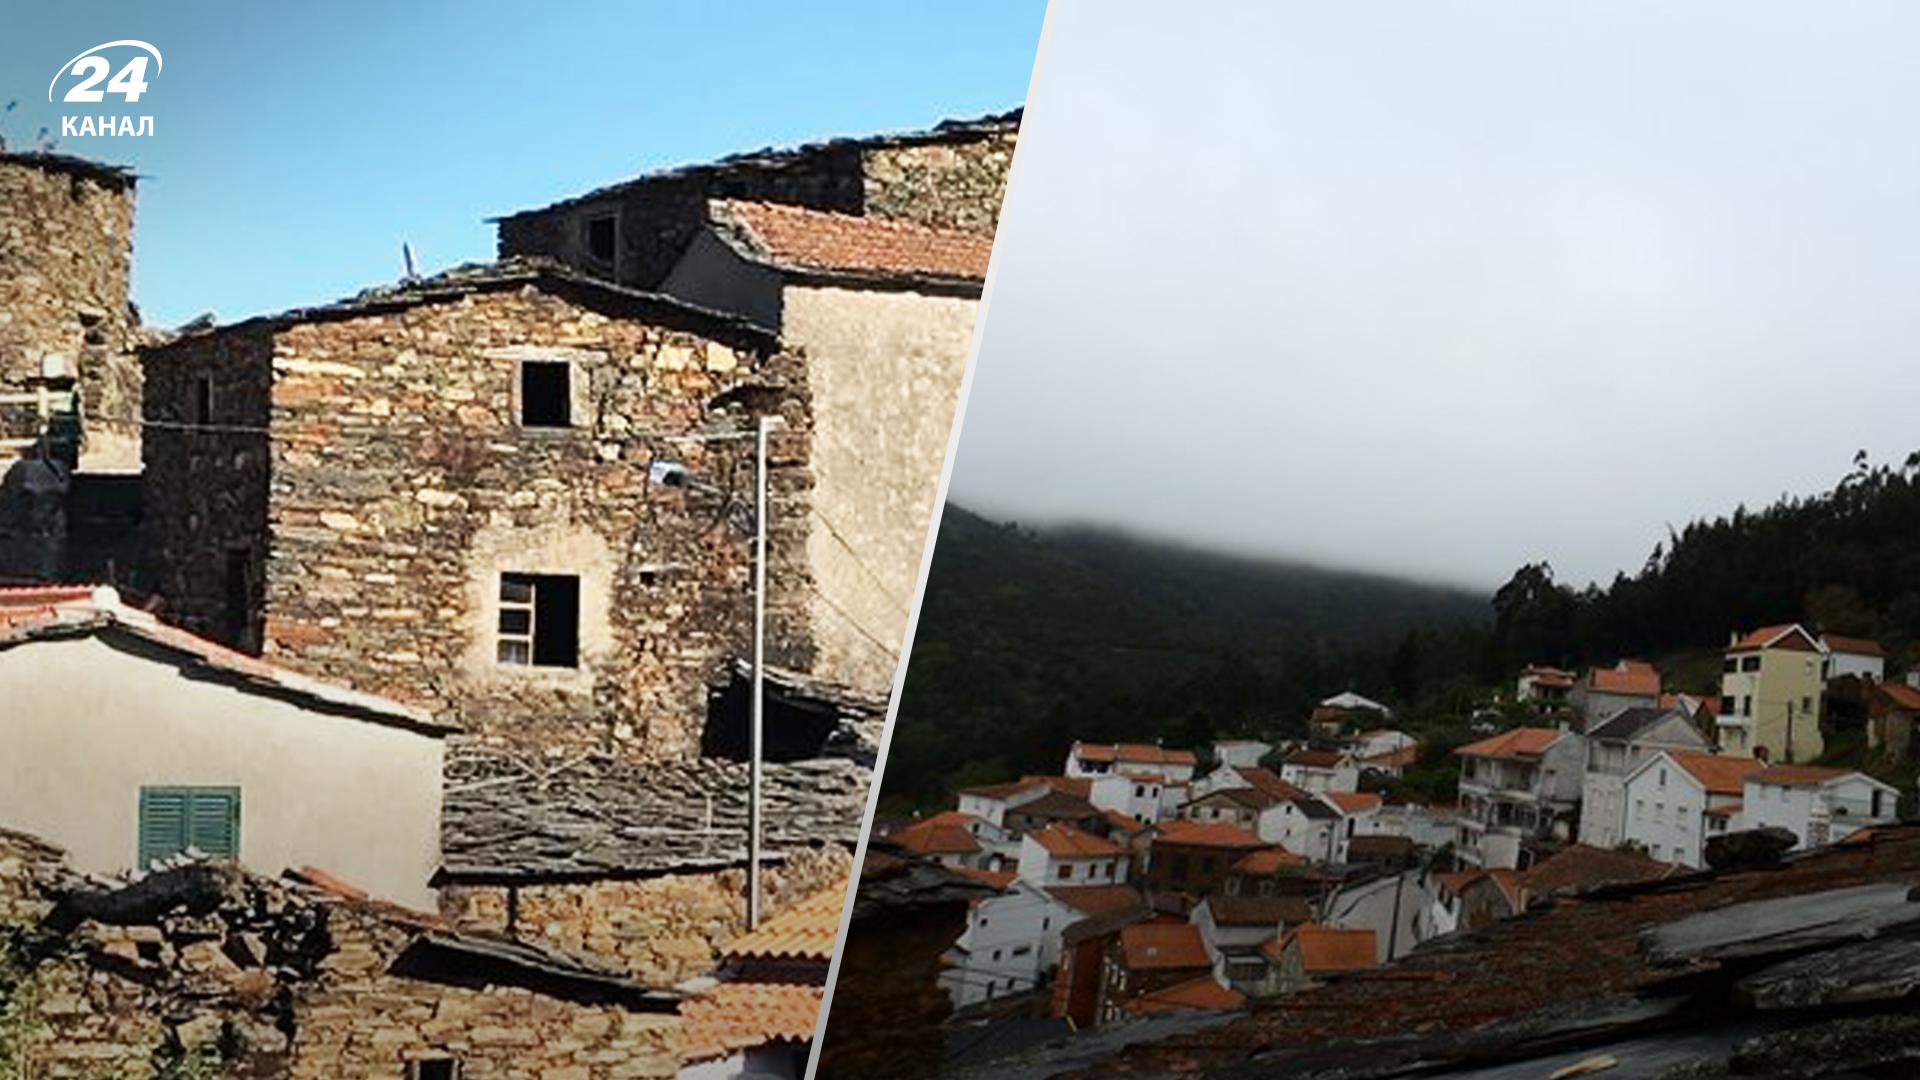 Розпродаж нерухомості у Португалії  3 пропозиції до 10 тисяч євро - Нерухомість